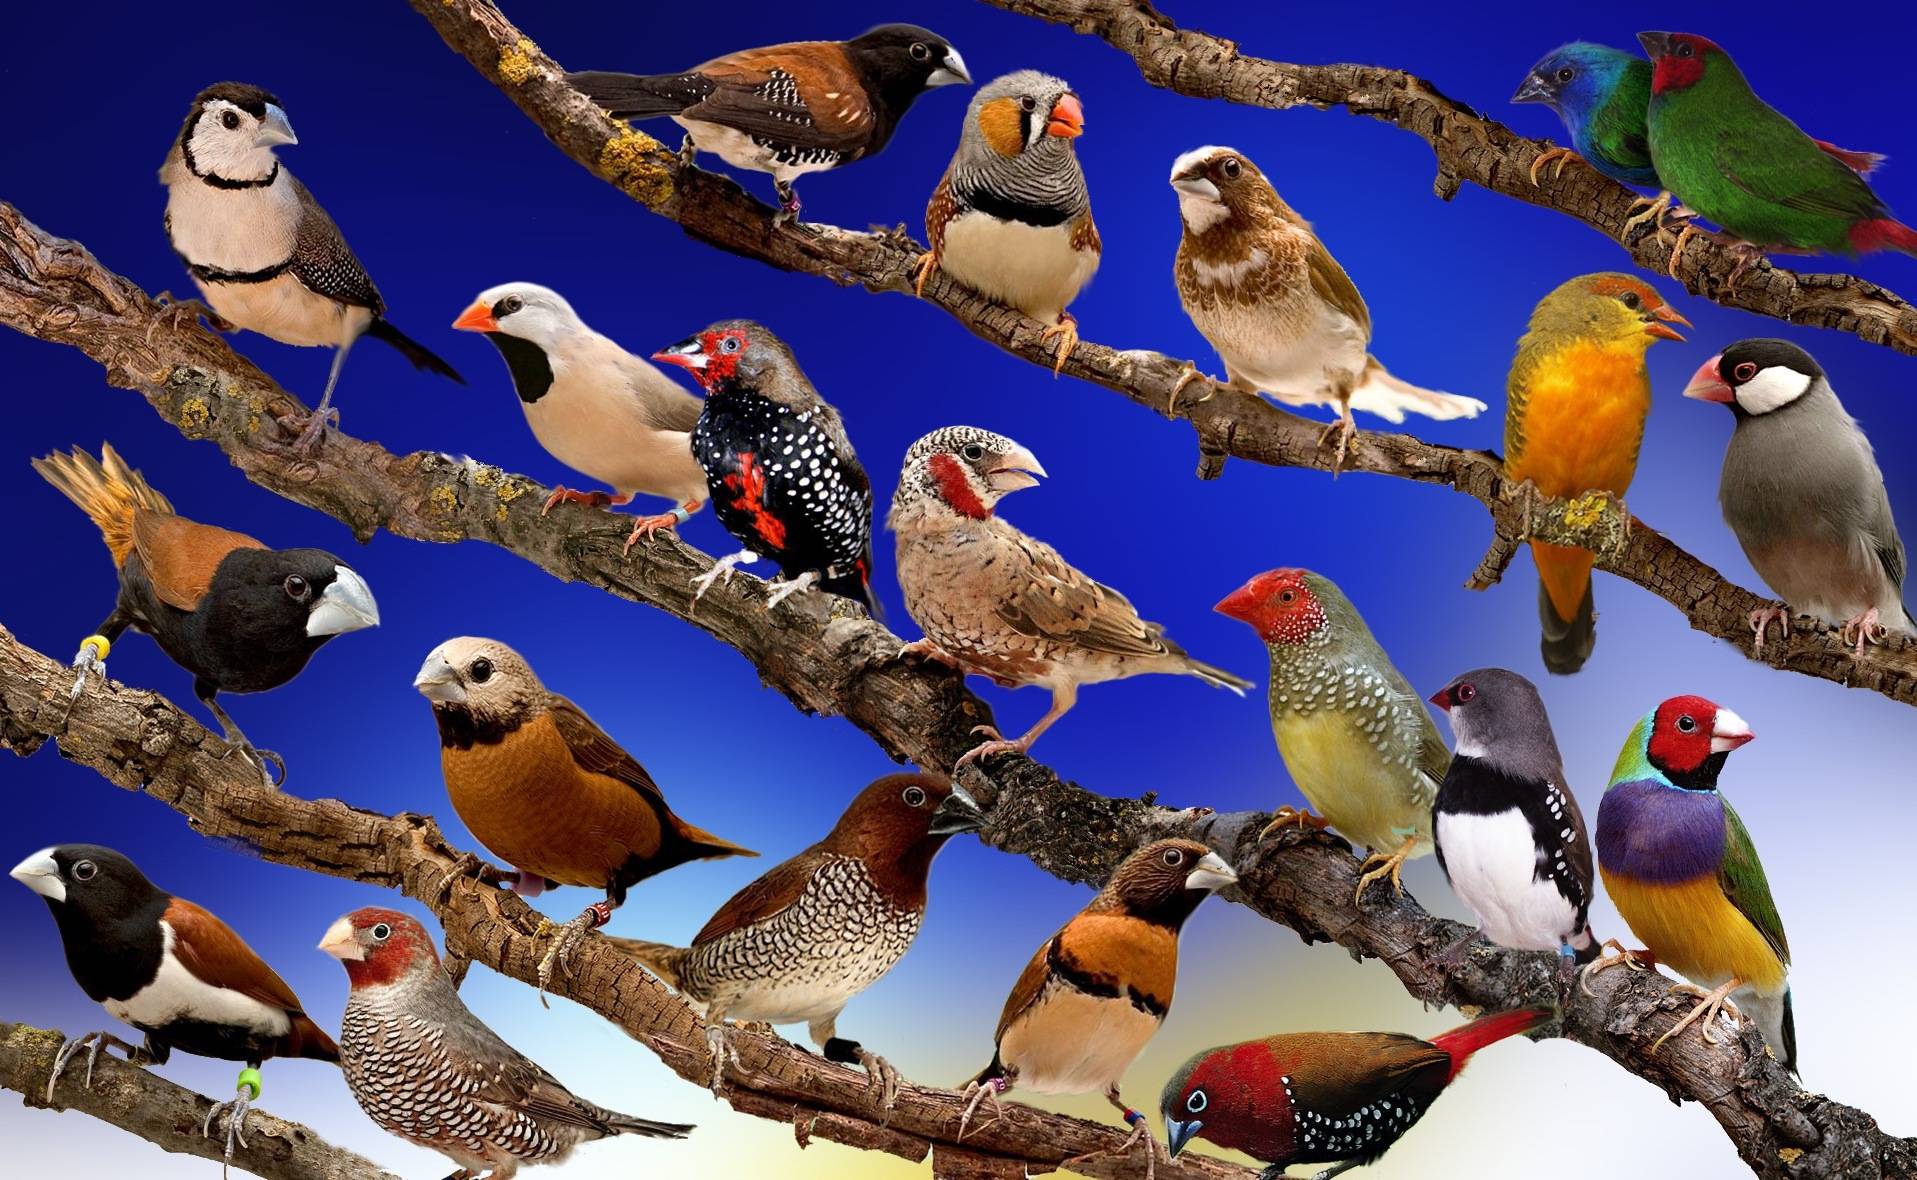 Породы попугаев. породы домашних попугаев - фото :: syl.ru